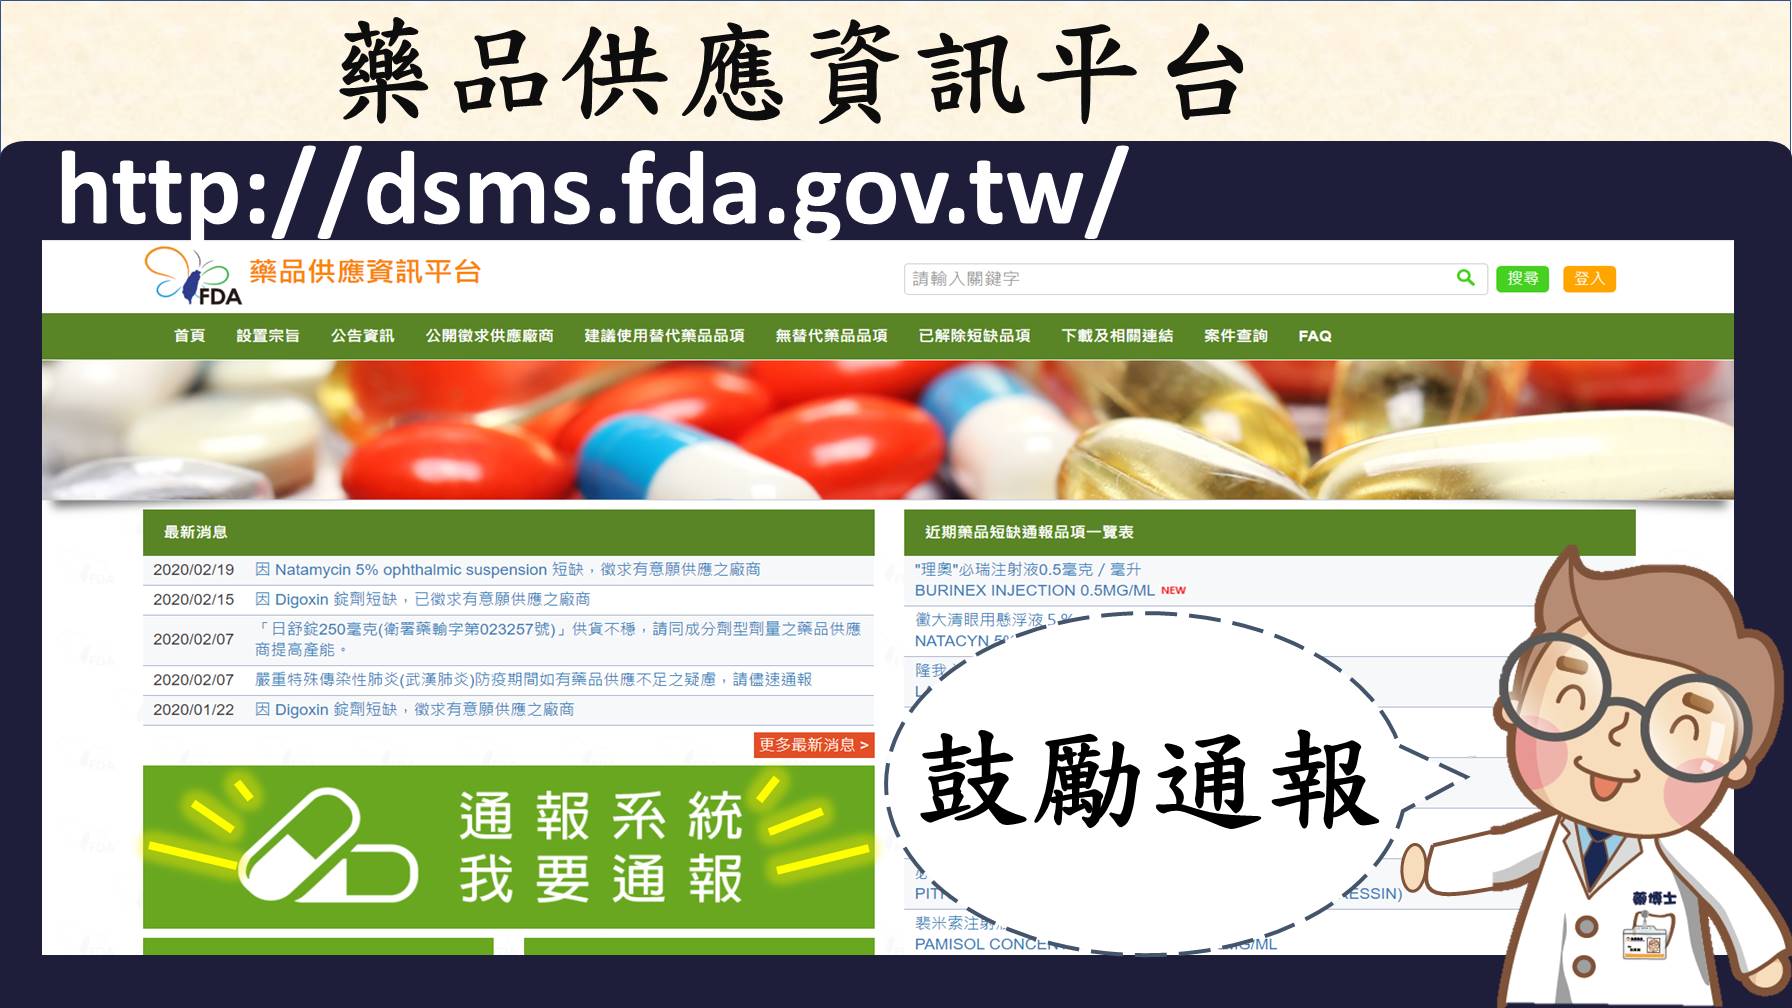 藥品供應資訊平台(http://dsms.fda.gov.tw/)網頁畫面